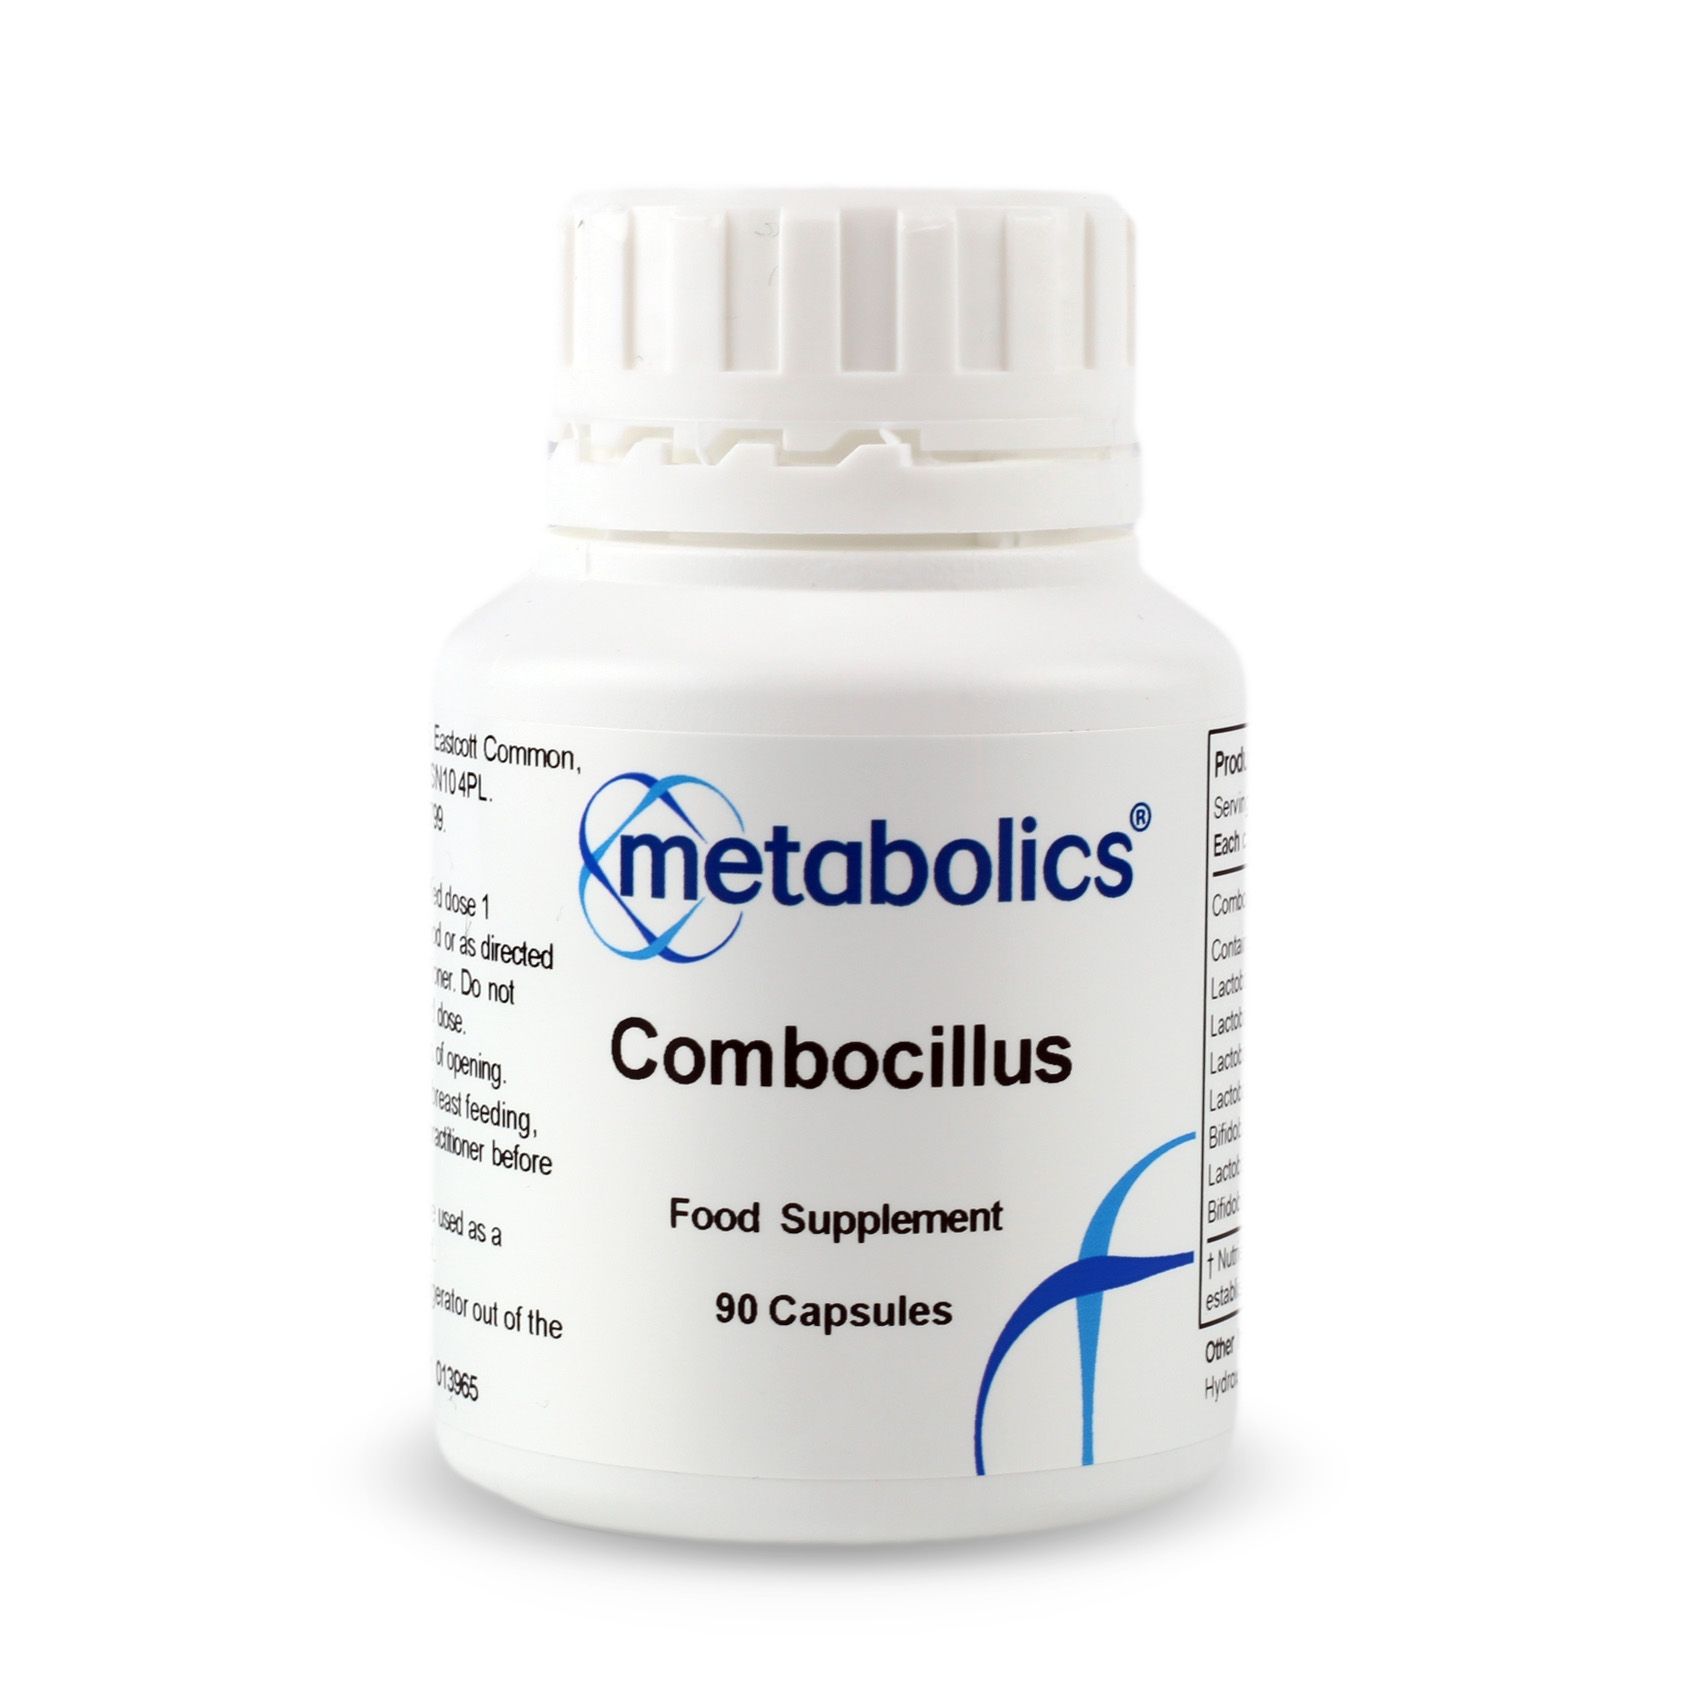 Combocillus (Pot of 90 capsules)